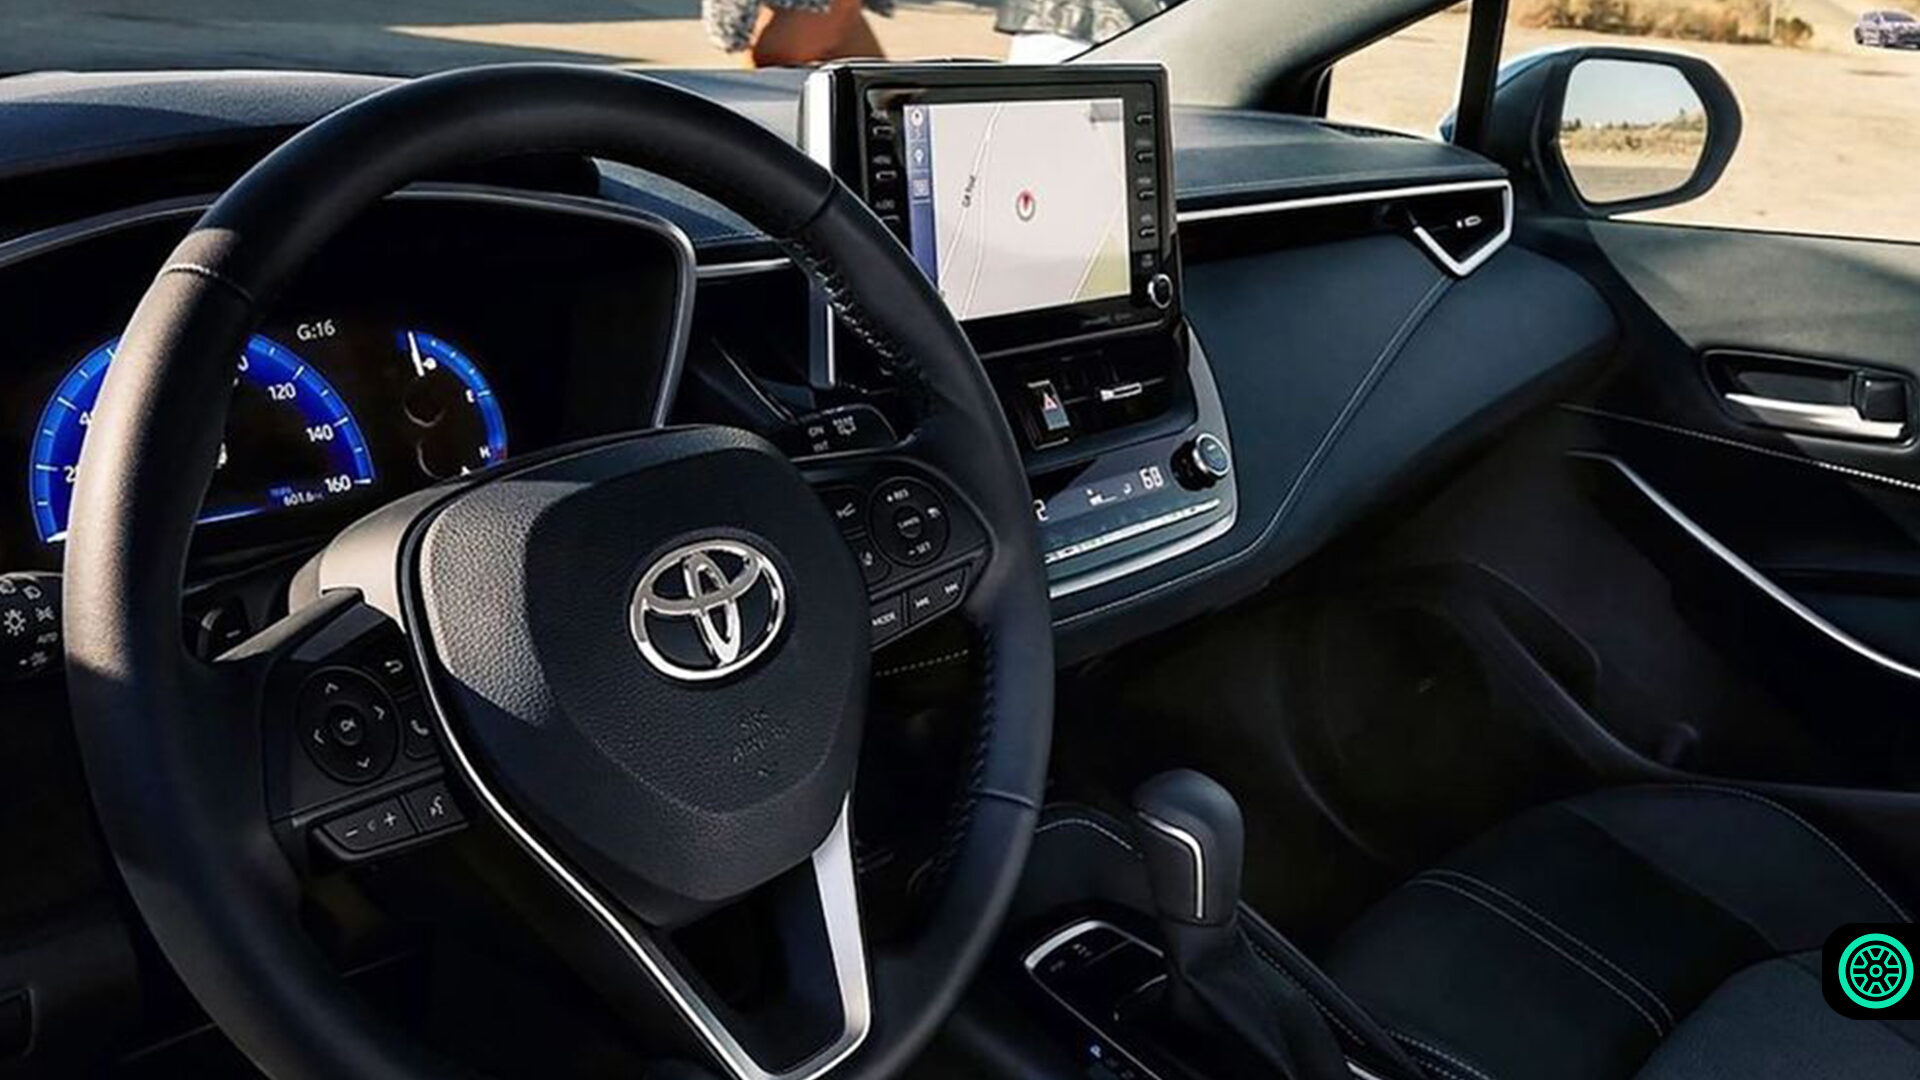 Toyota GR Corolla iç yaşam alanı paylaşıldı 1